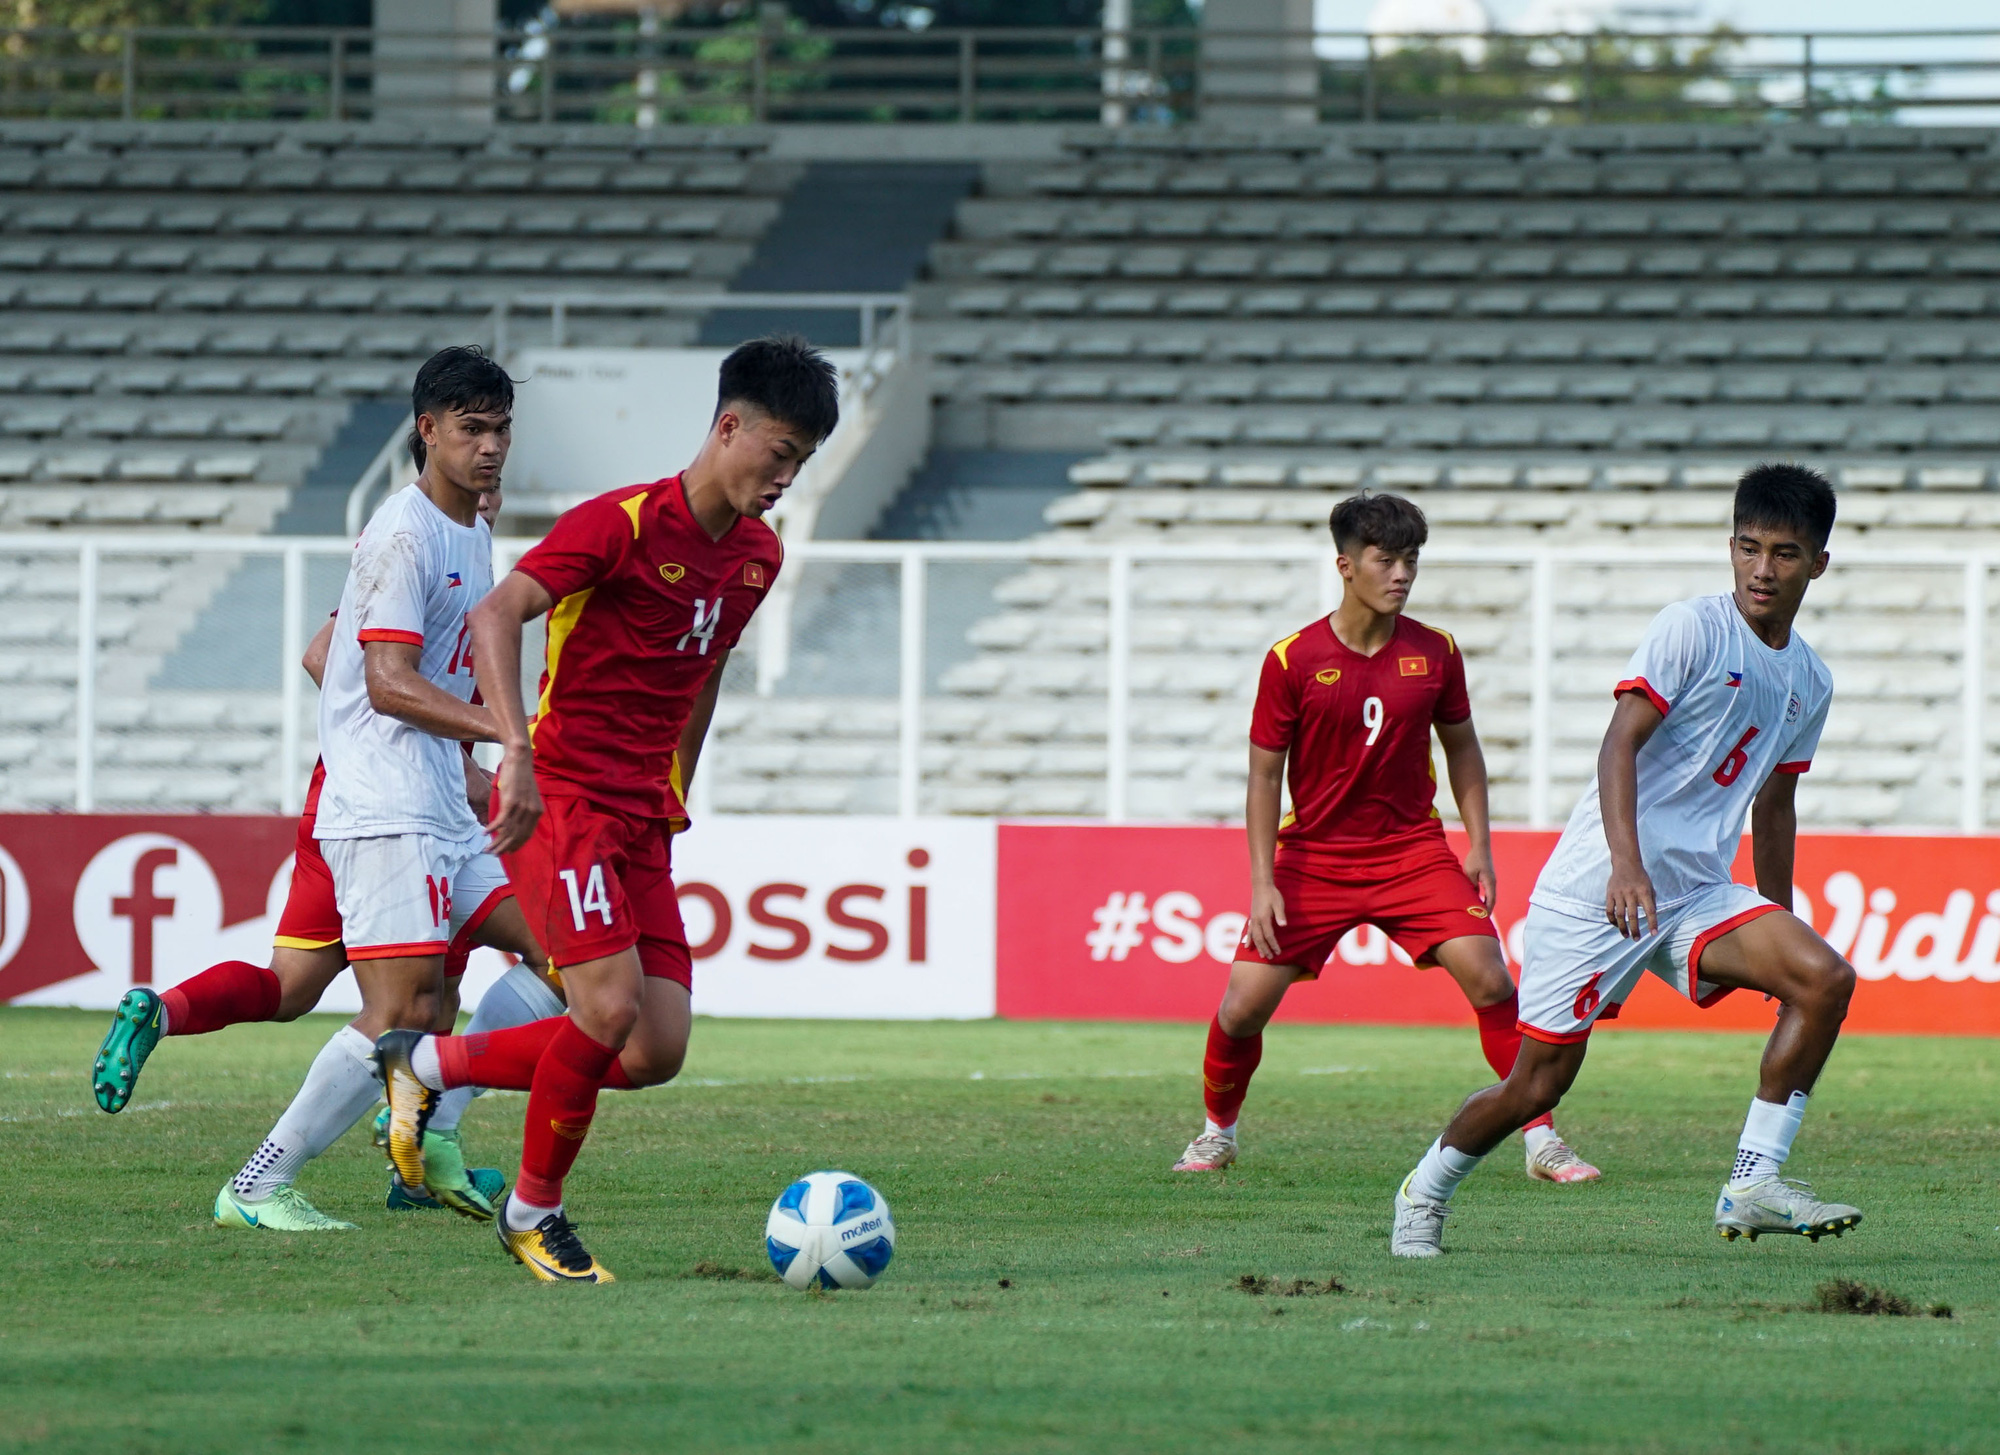 ĐT U19 Việt Nam 4-1 ĐT U19 Philippines: Chiến thắng thuyết phục